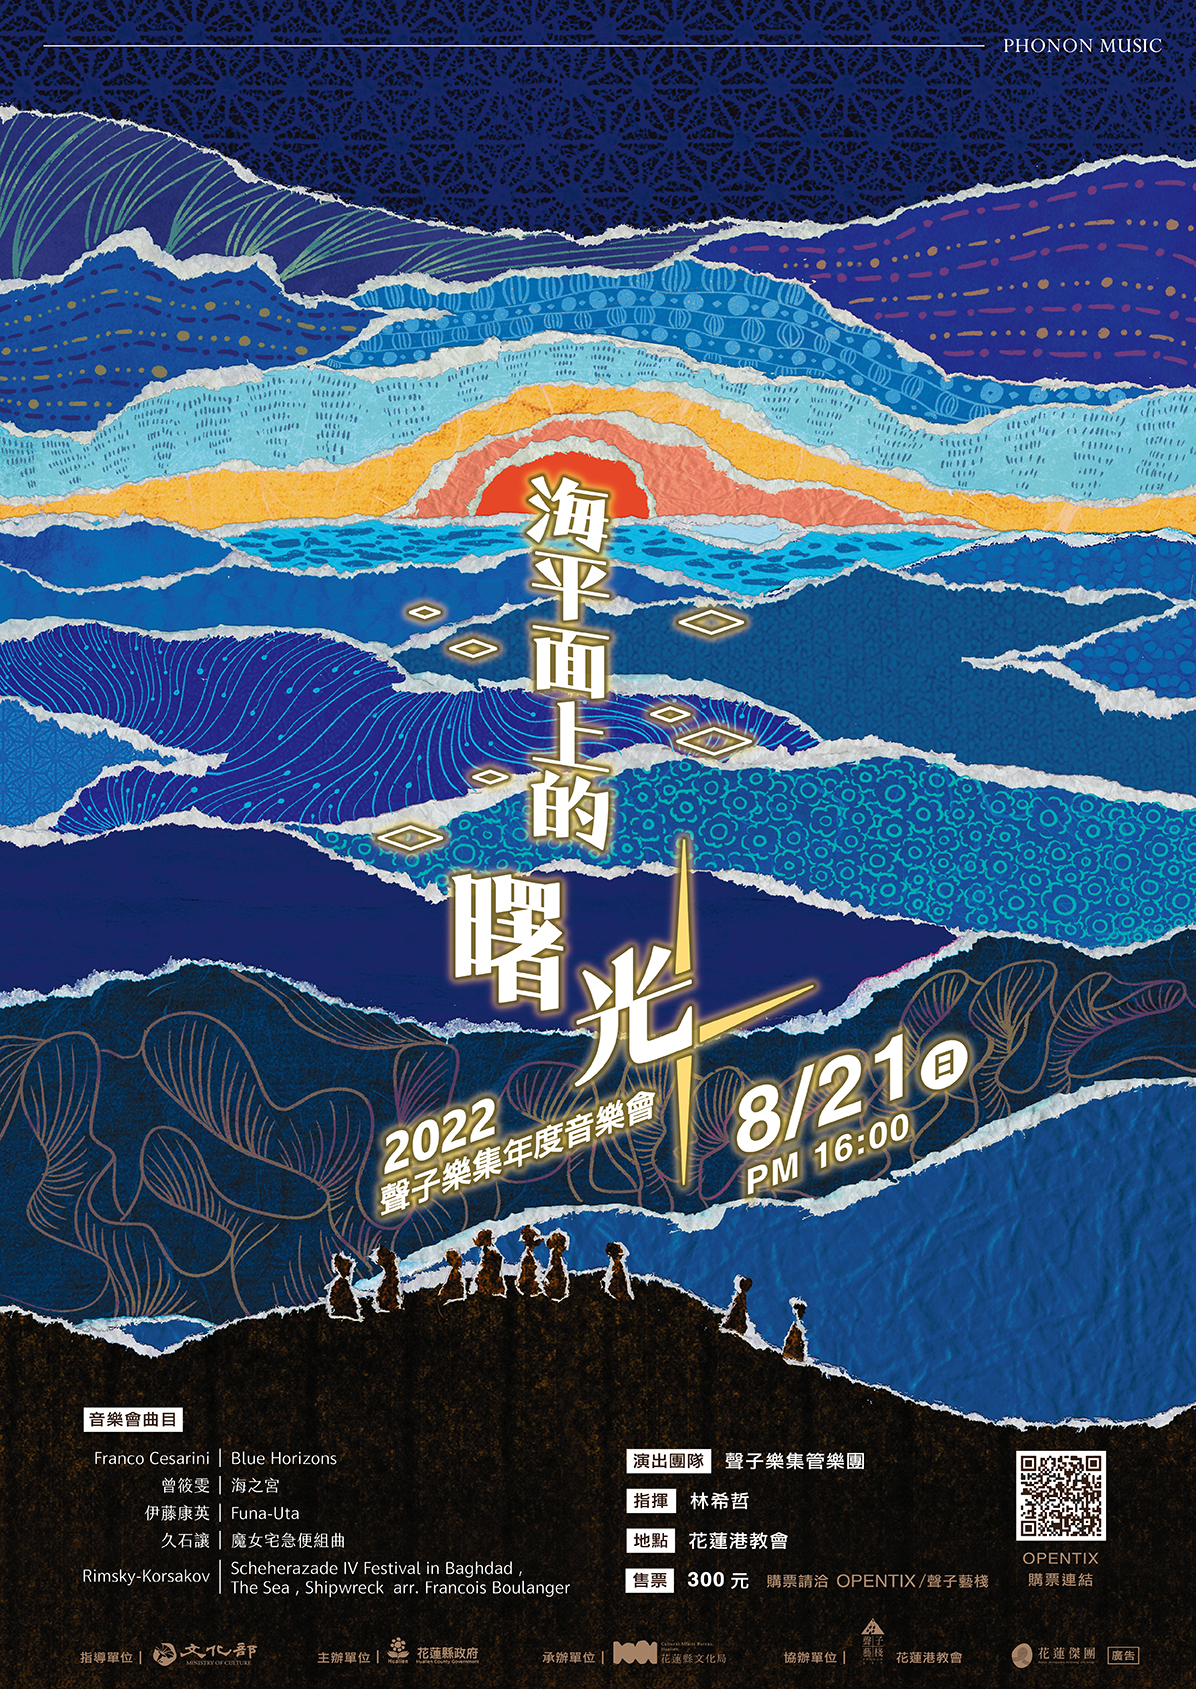 「海平面上的曙光」2022聲子樂集年度音樂會